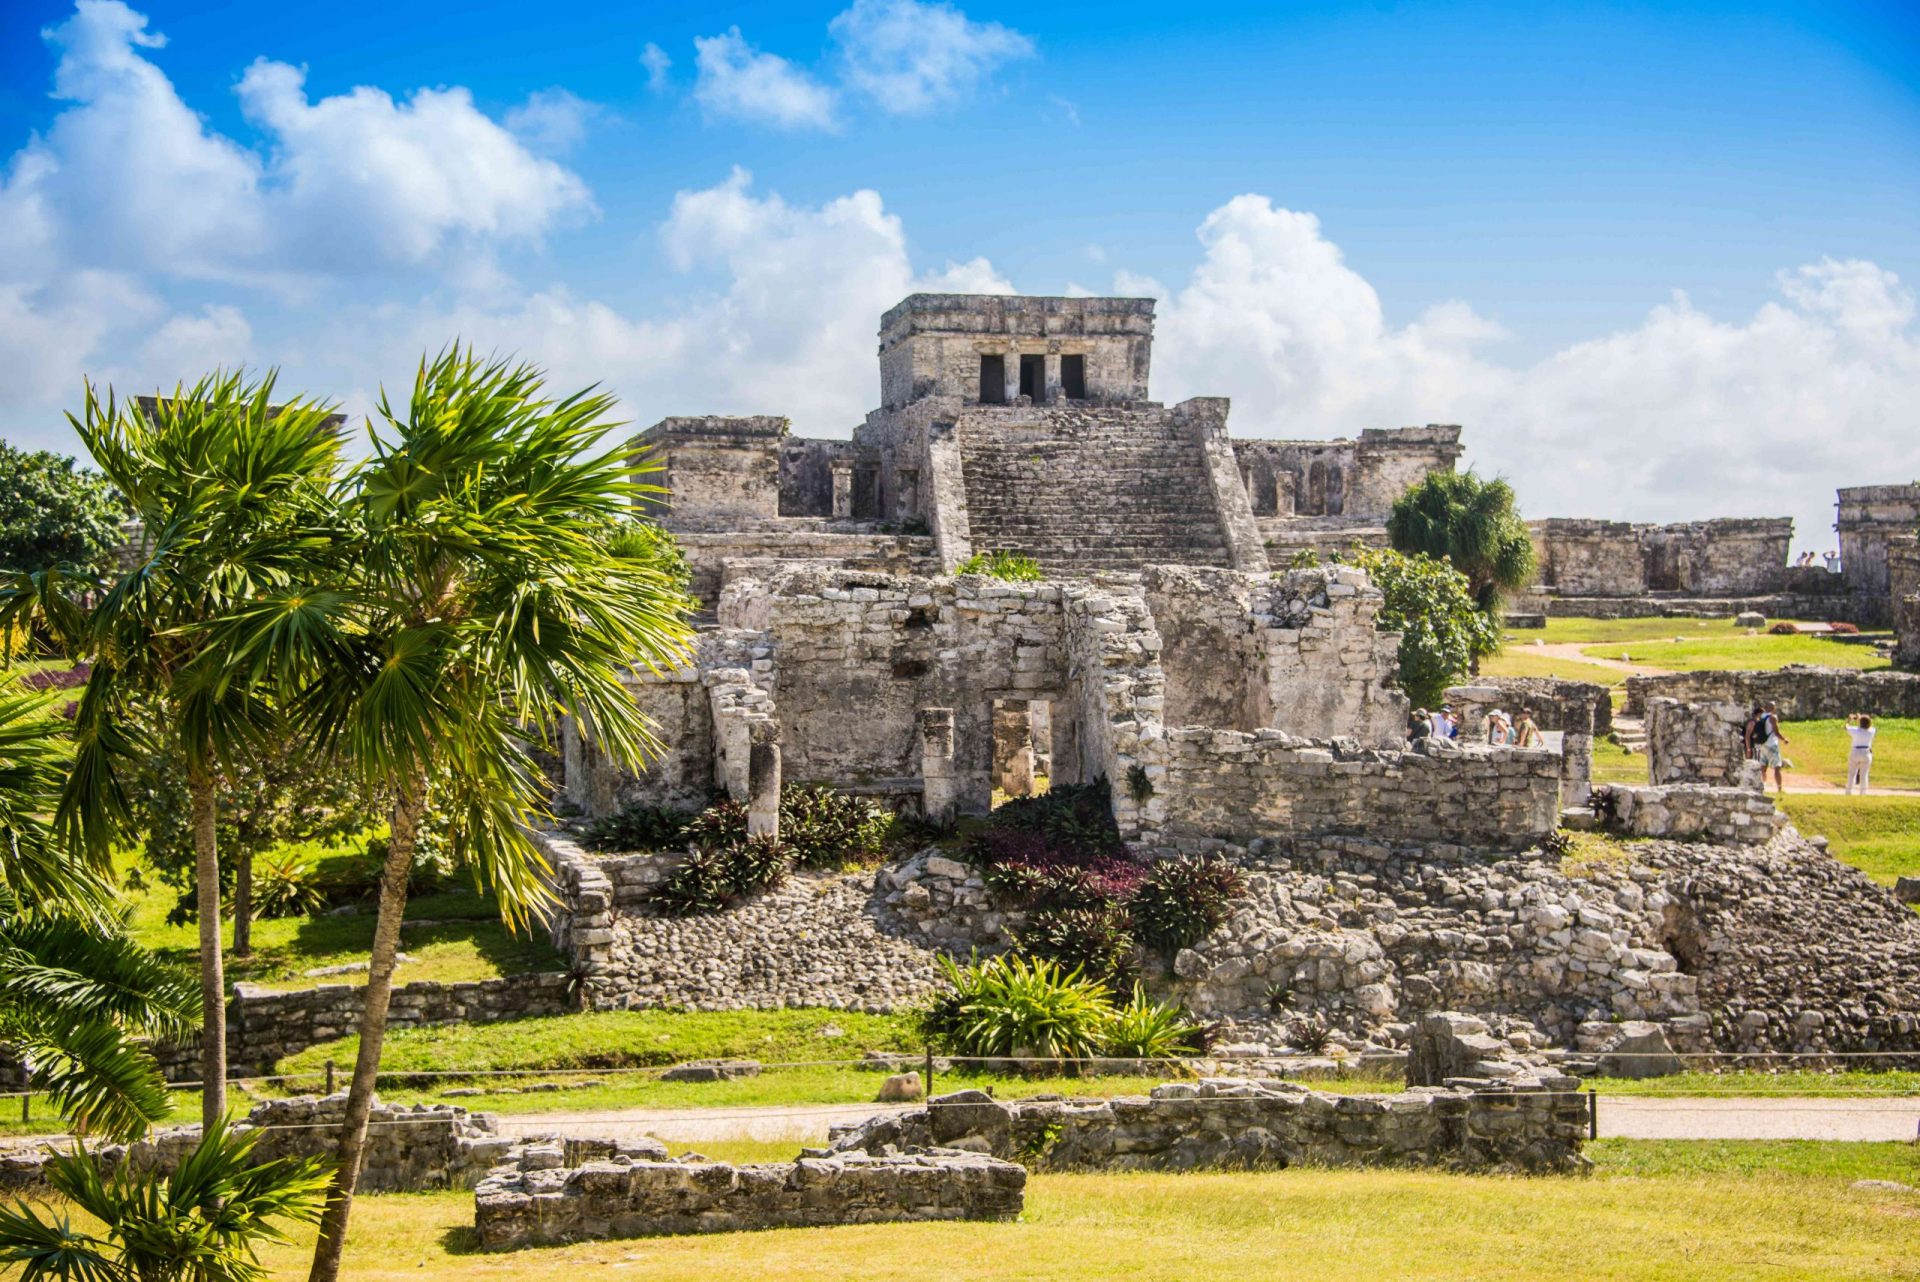 Ruinas de un templo maya construido sobre una colina cubierta de hierba con palmeras en primer plano